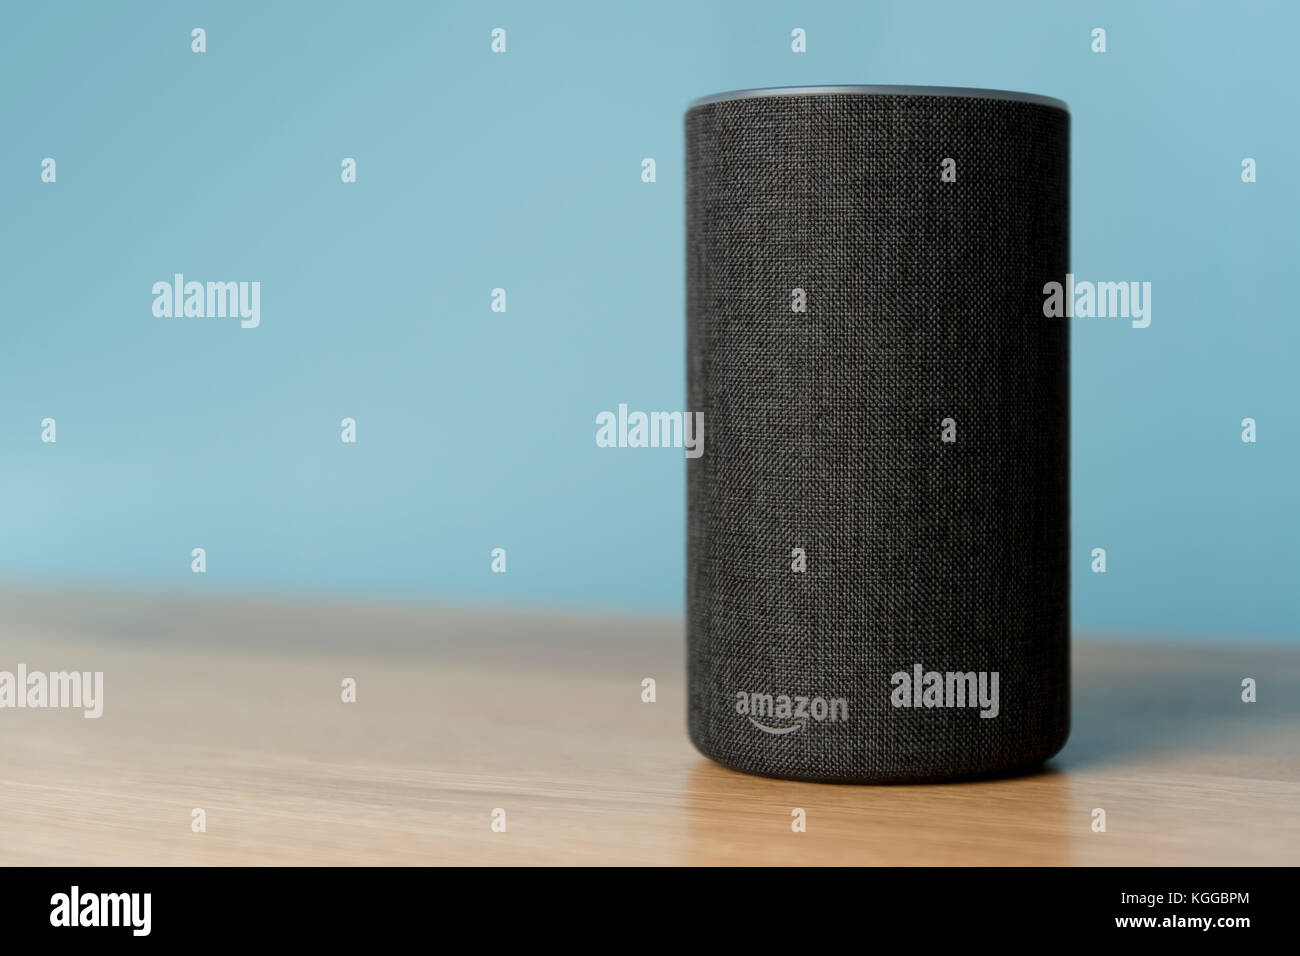 Il 2017 Rilascio di un carbone Amazon eco (di seconda generazione) smart speaker e assistente personale Alexa sparato contro un tavolo in legno e muro di blu. Foto Stock